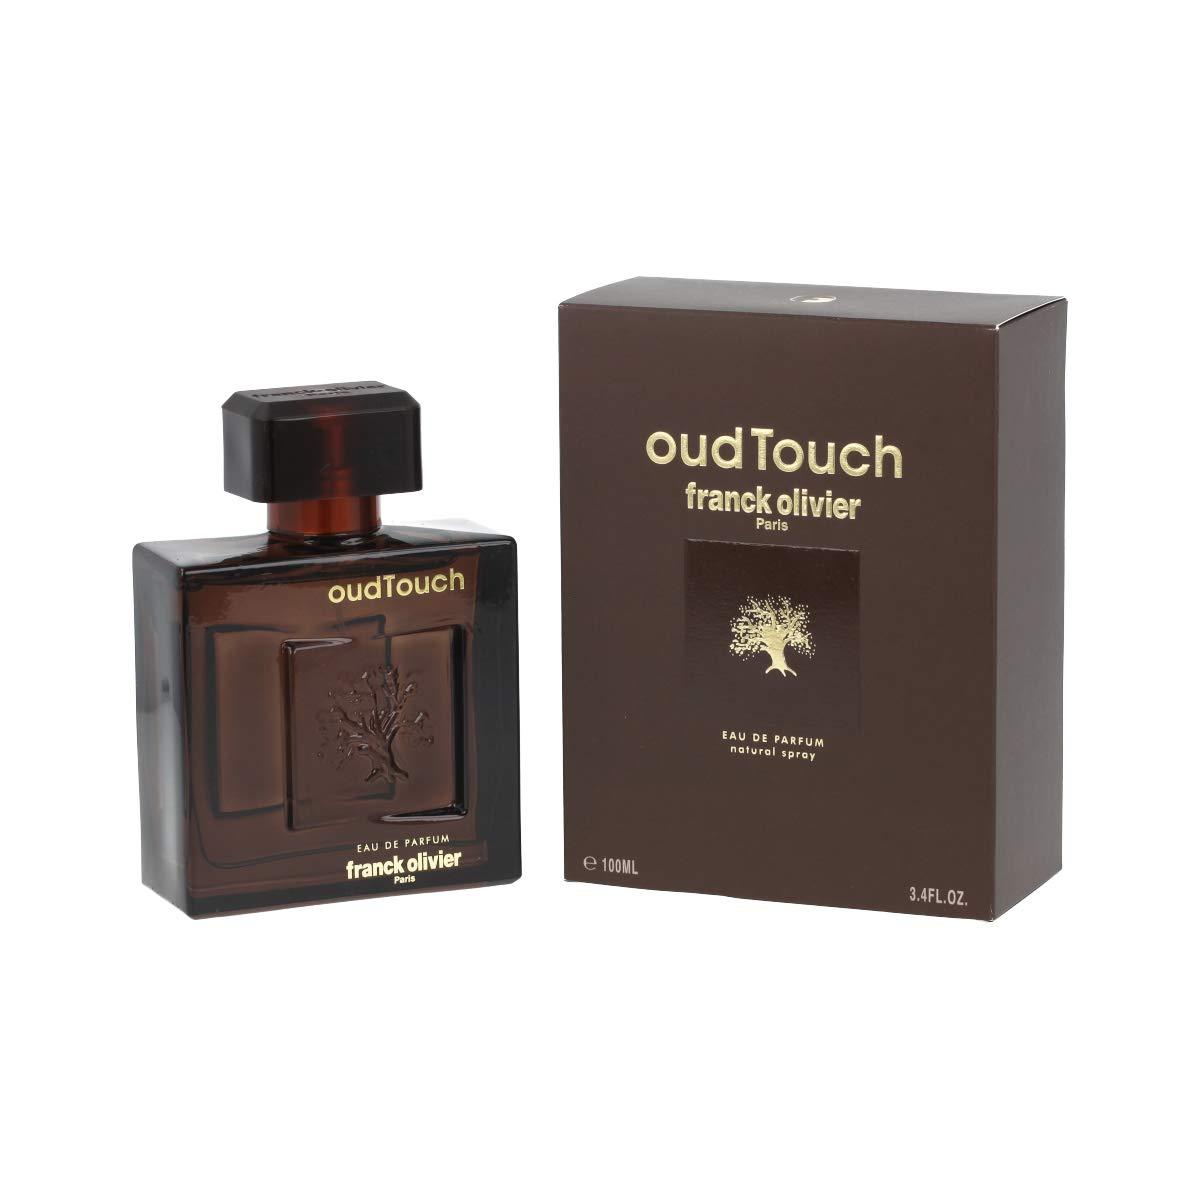 Frank Oliver Oud touch eau de parfum spray for men, 3.4 Fl Ounce, woody ...